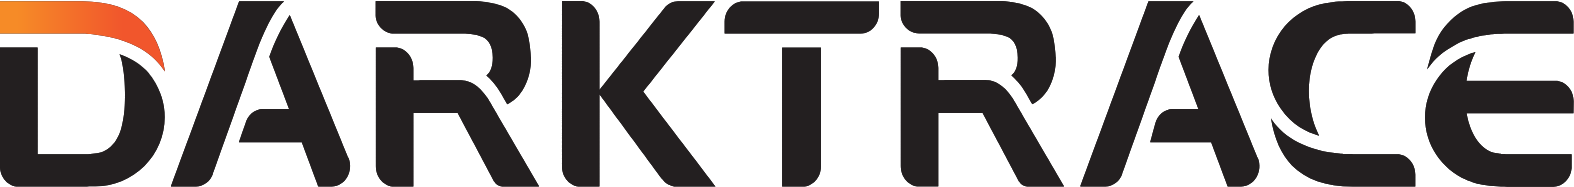 Darktrace logo large (transparent PNG)